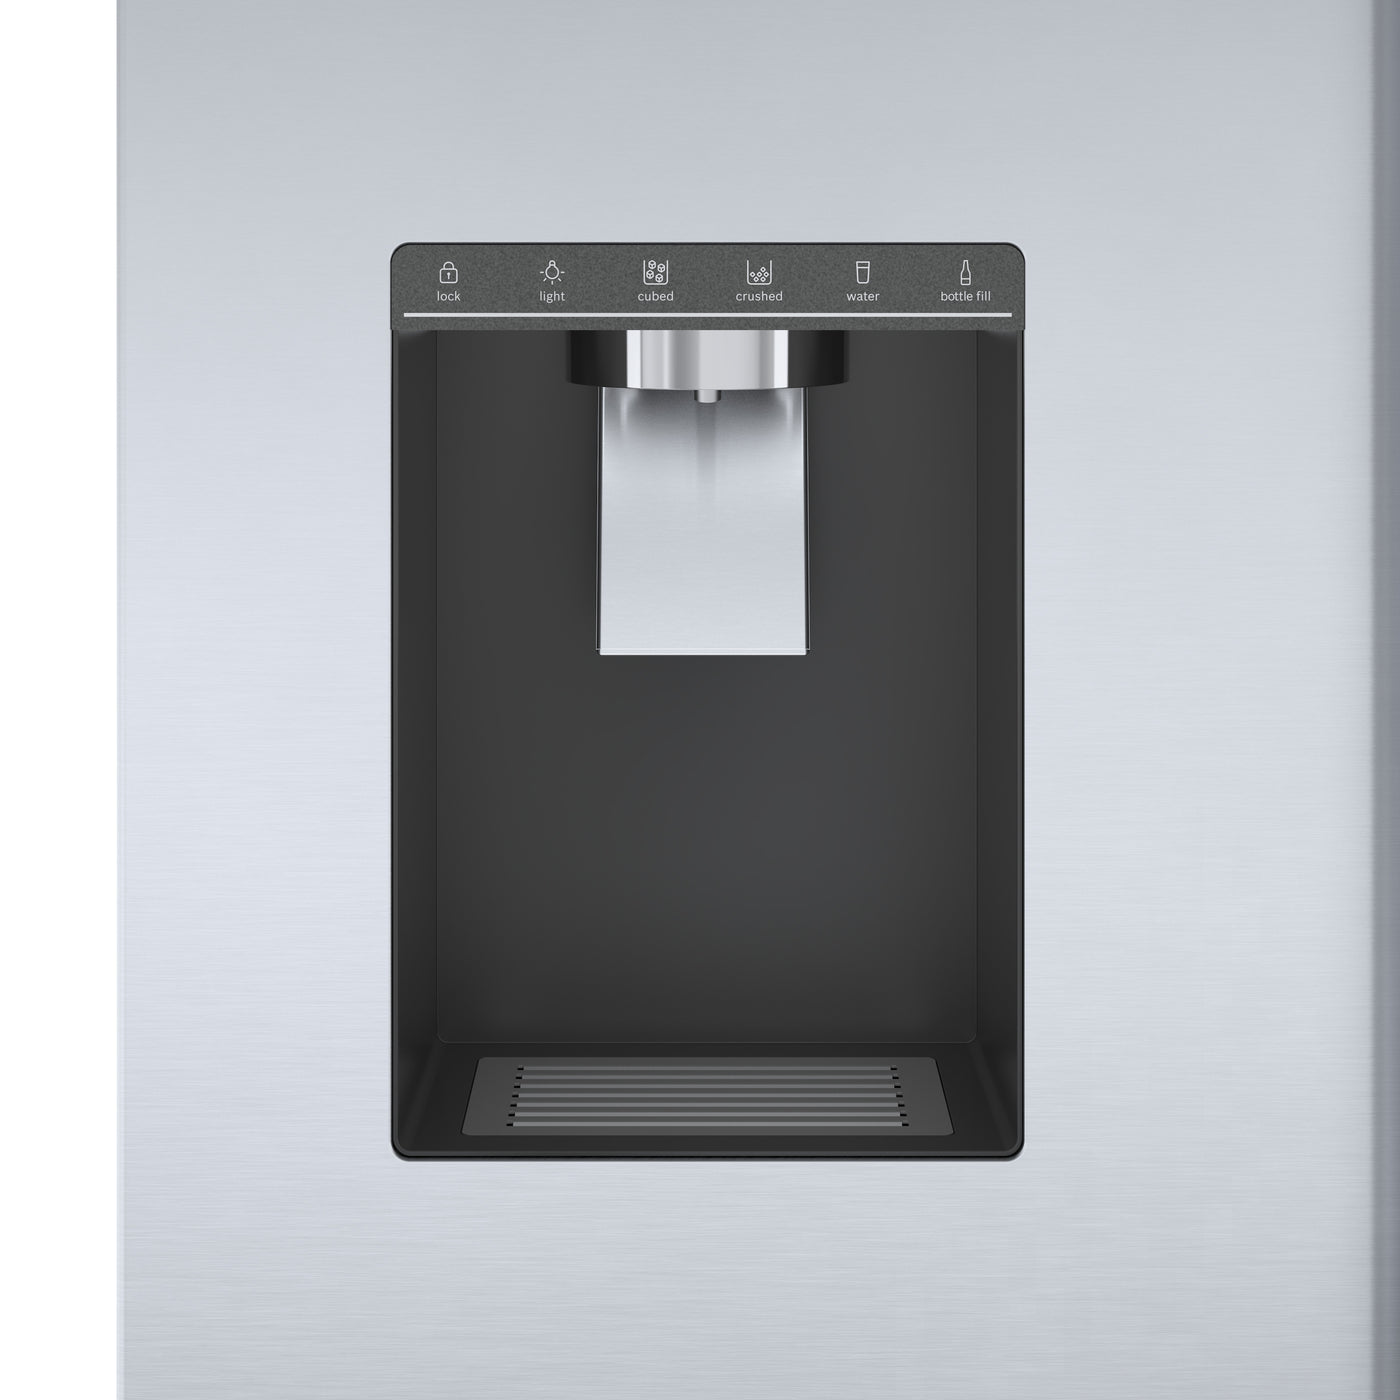 bosch stainless steel refrigerator